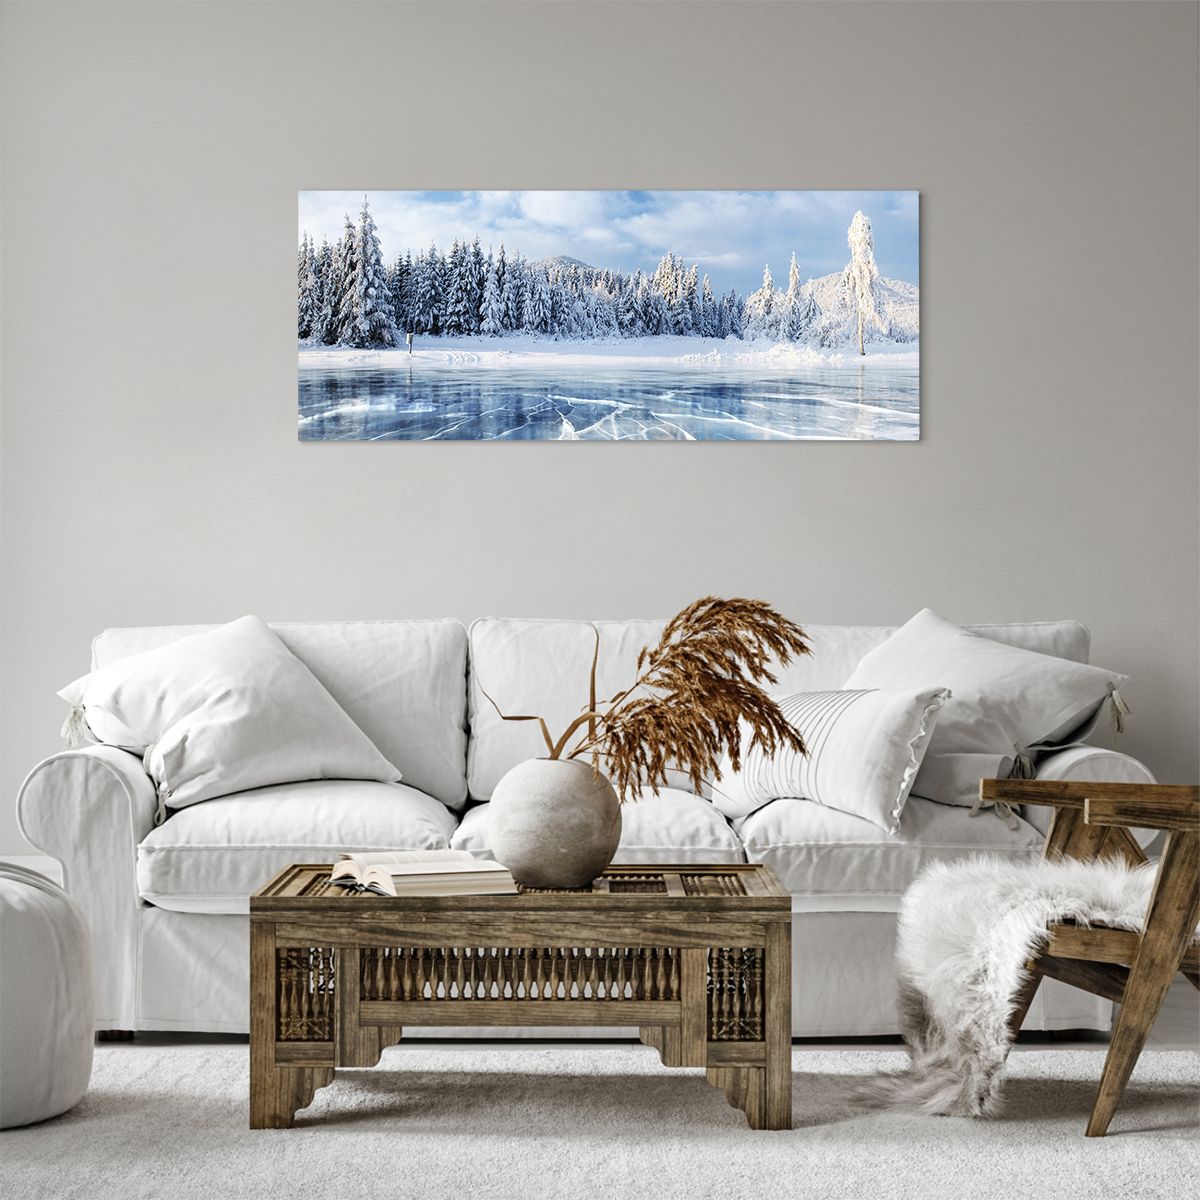 Obrazy na płótnie Krajobraz, Obrazy na płótnie Zima, Obrazy na płótnie Jezioro, Obrazy na płótnie Natura, Obrazy na płótnie Śnieg